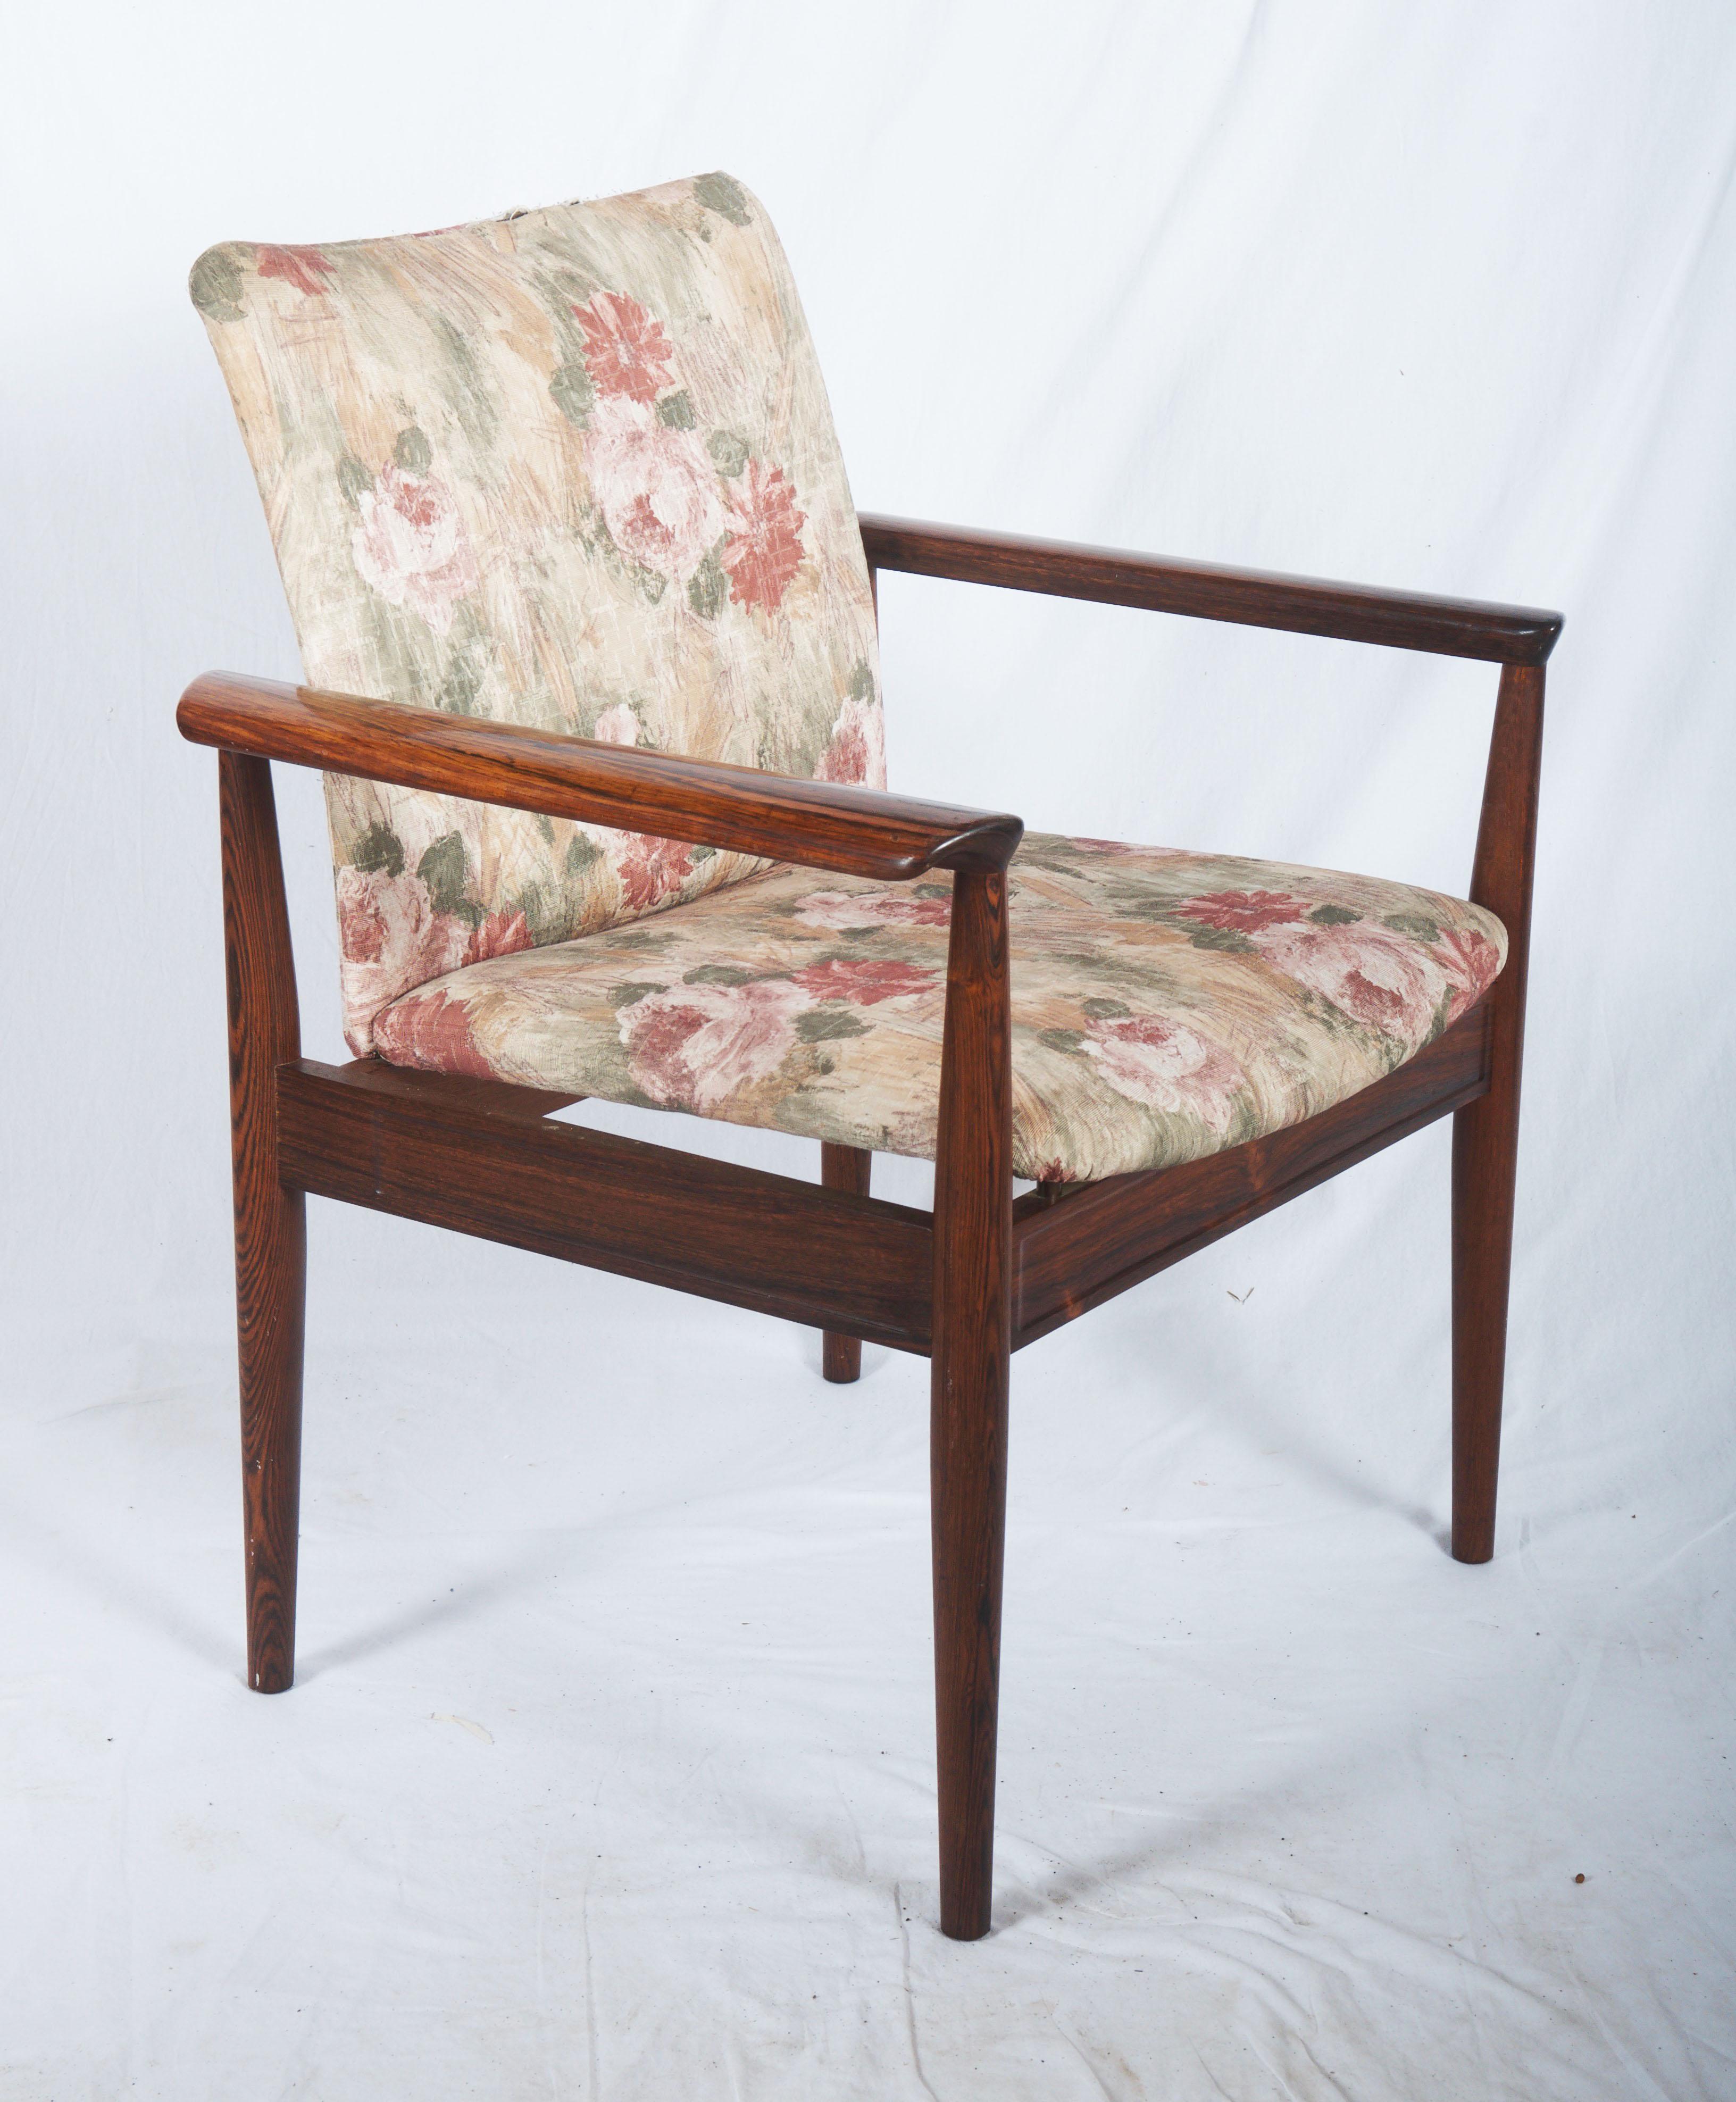 Finn Juhl, chaise de bureau ou fauteuil diplomatique avec structure en bois dur massif, modèle 209. Conçu en 1963. Produit par France & Son.
Mesures : H. 82 cm, SH. 44 cm, B. 69 cm.
Utilisé mais encore en très bon état, possibilité d'une nouvelle